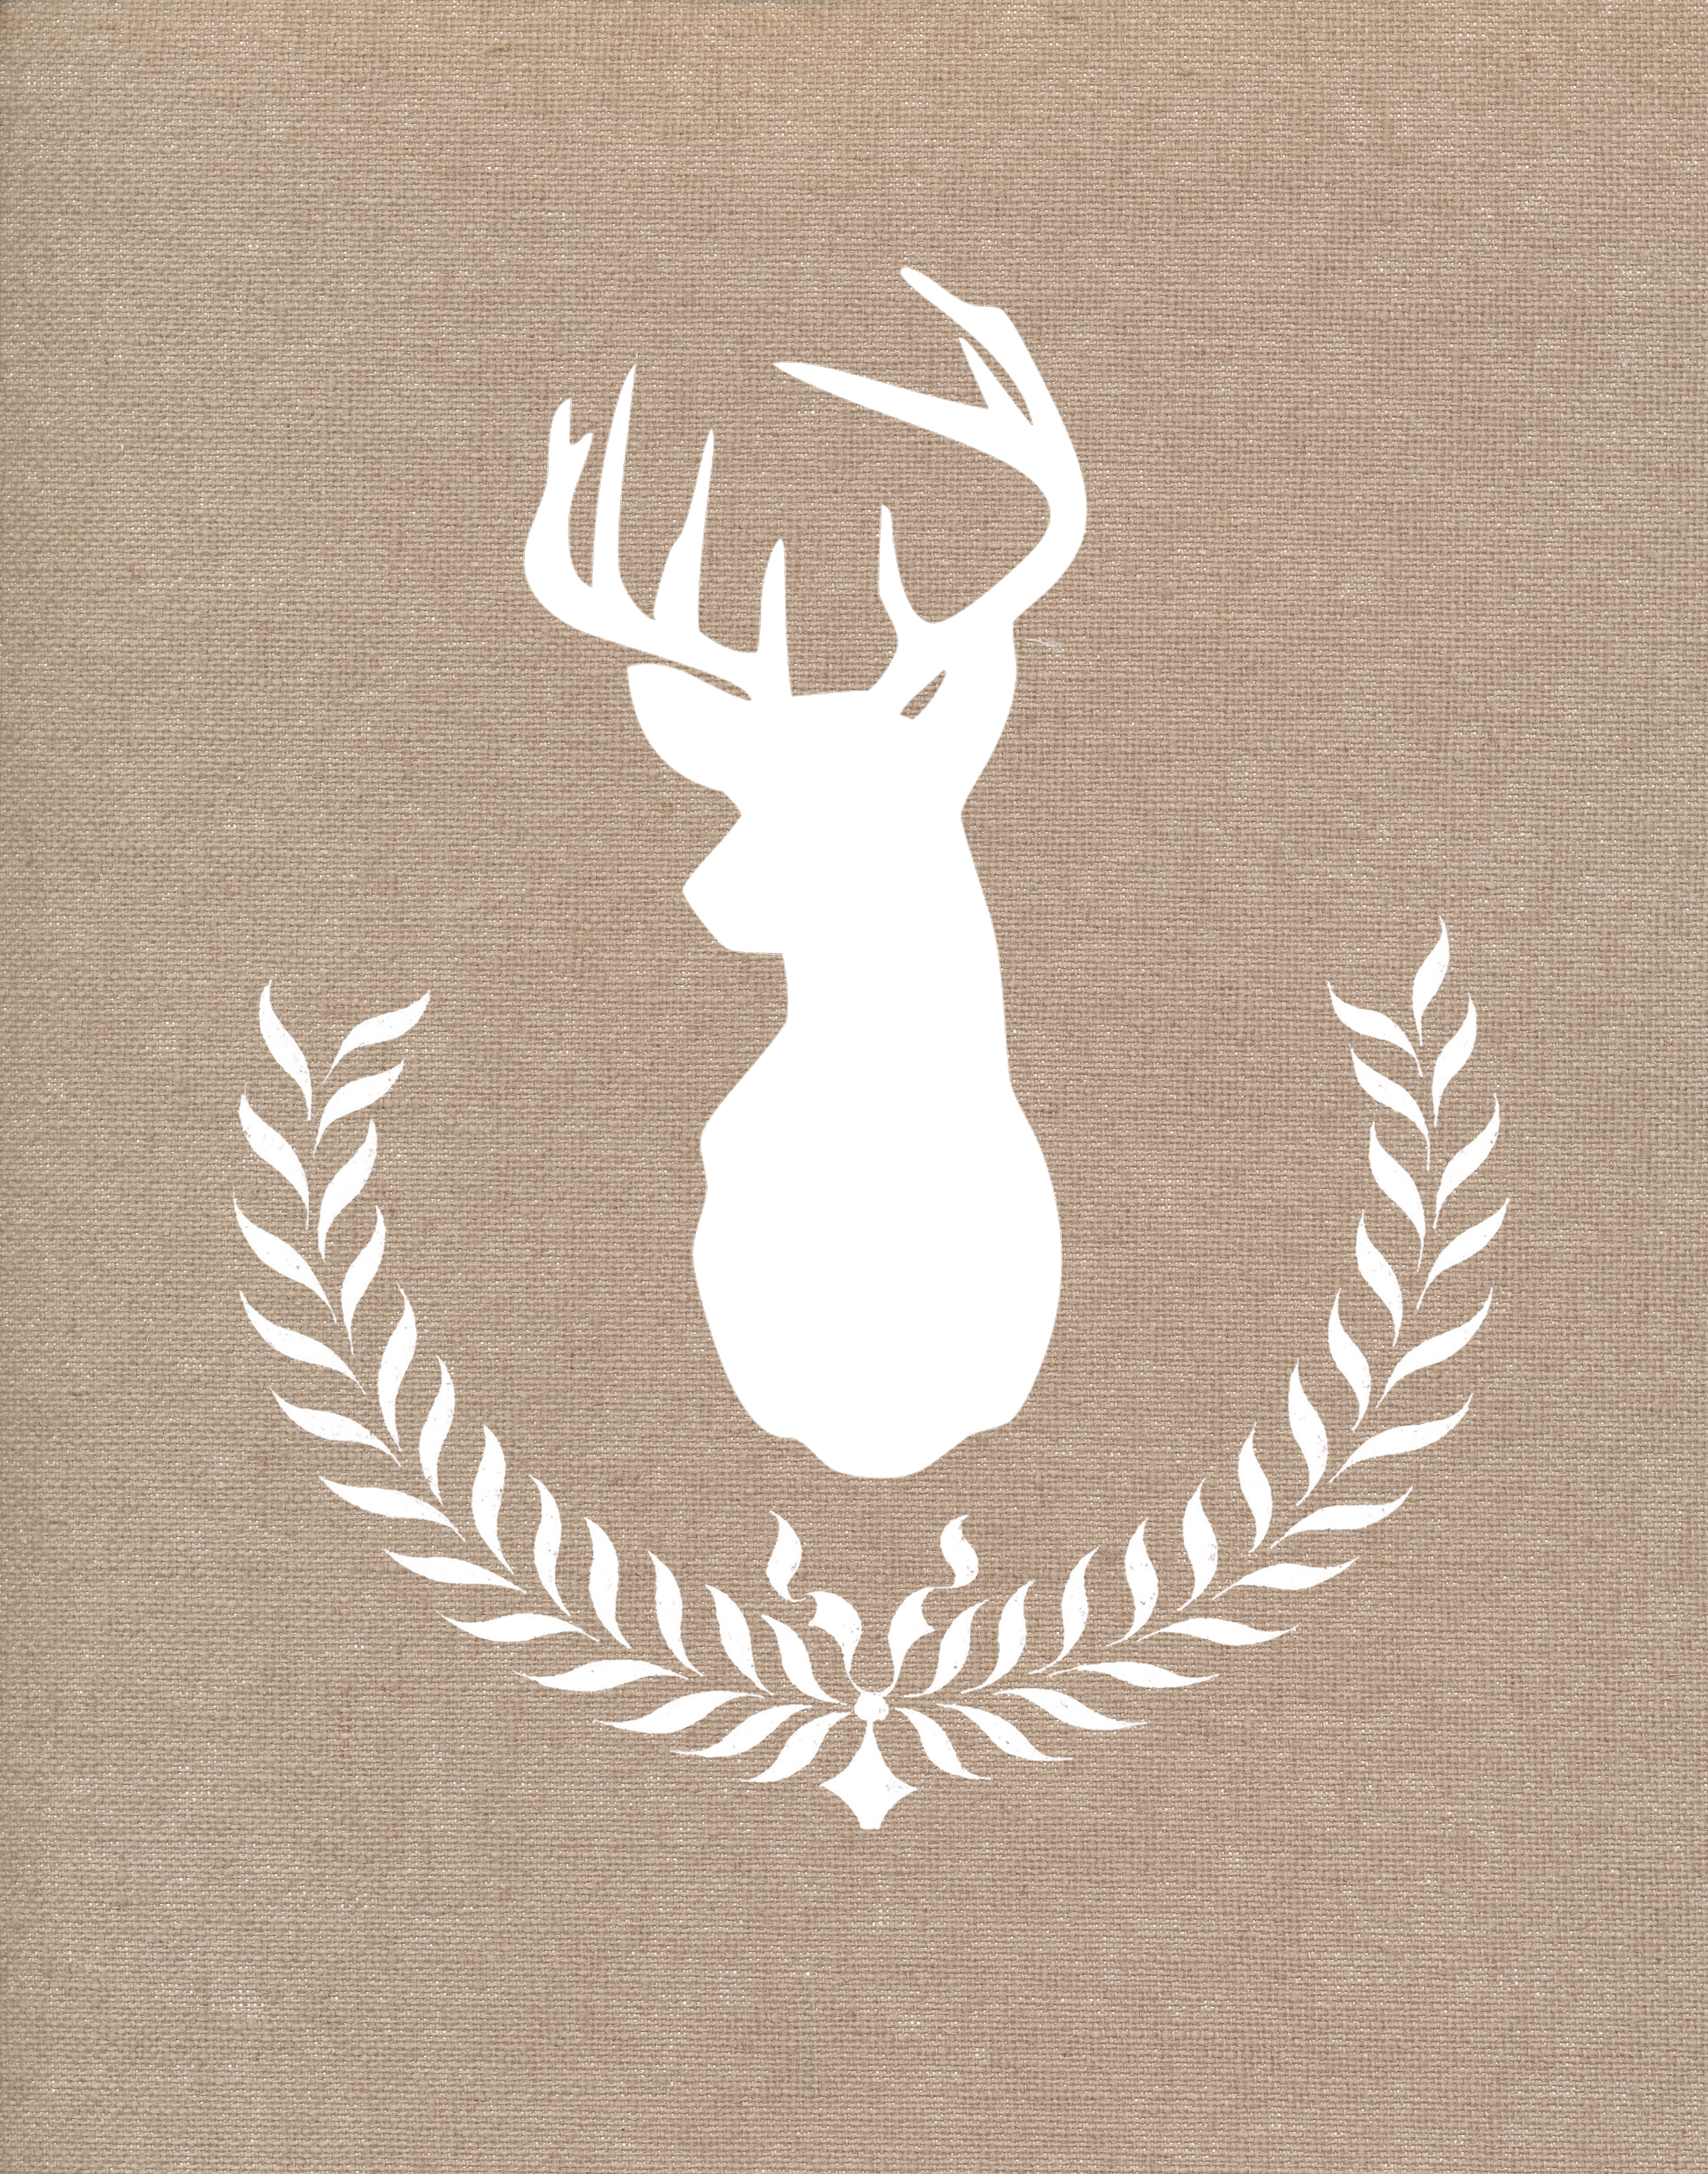 Reindeer Wreath Printable